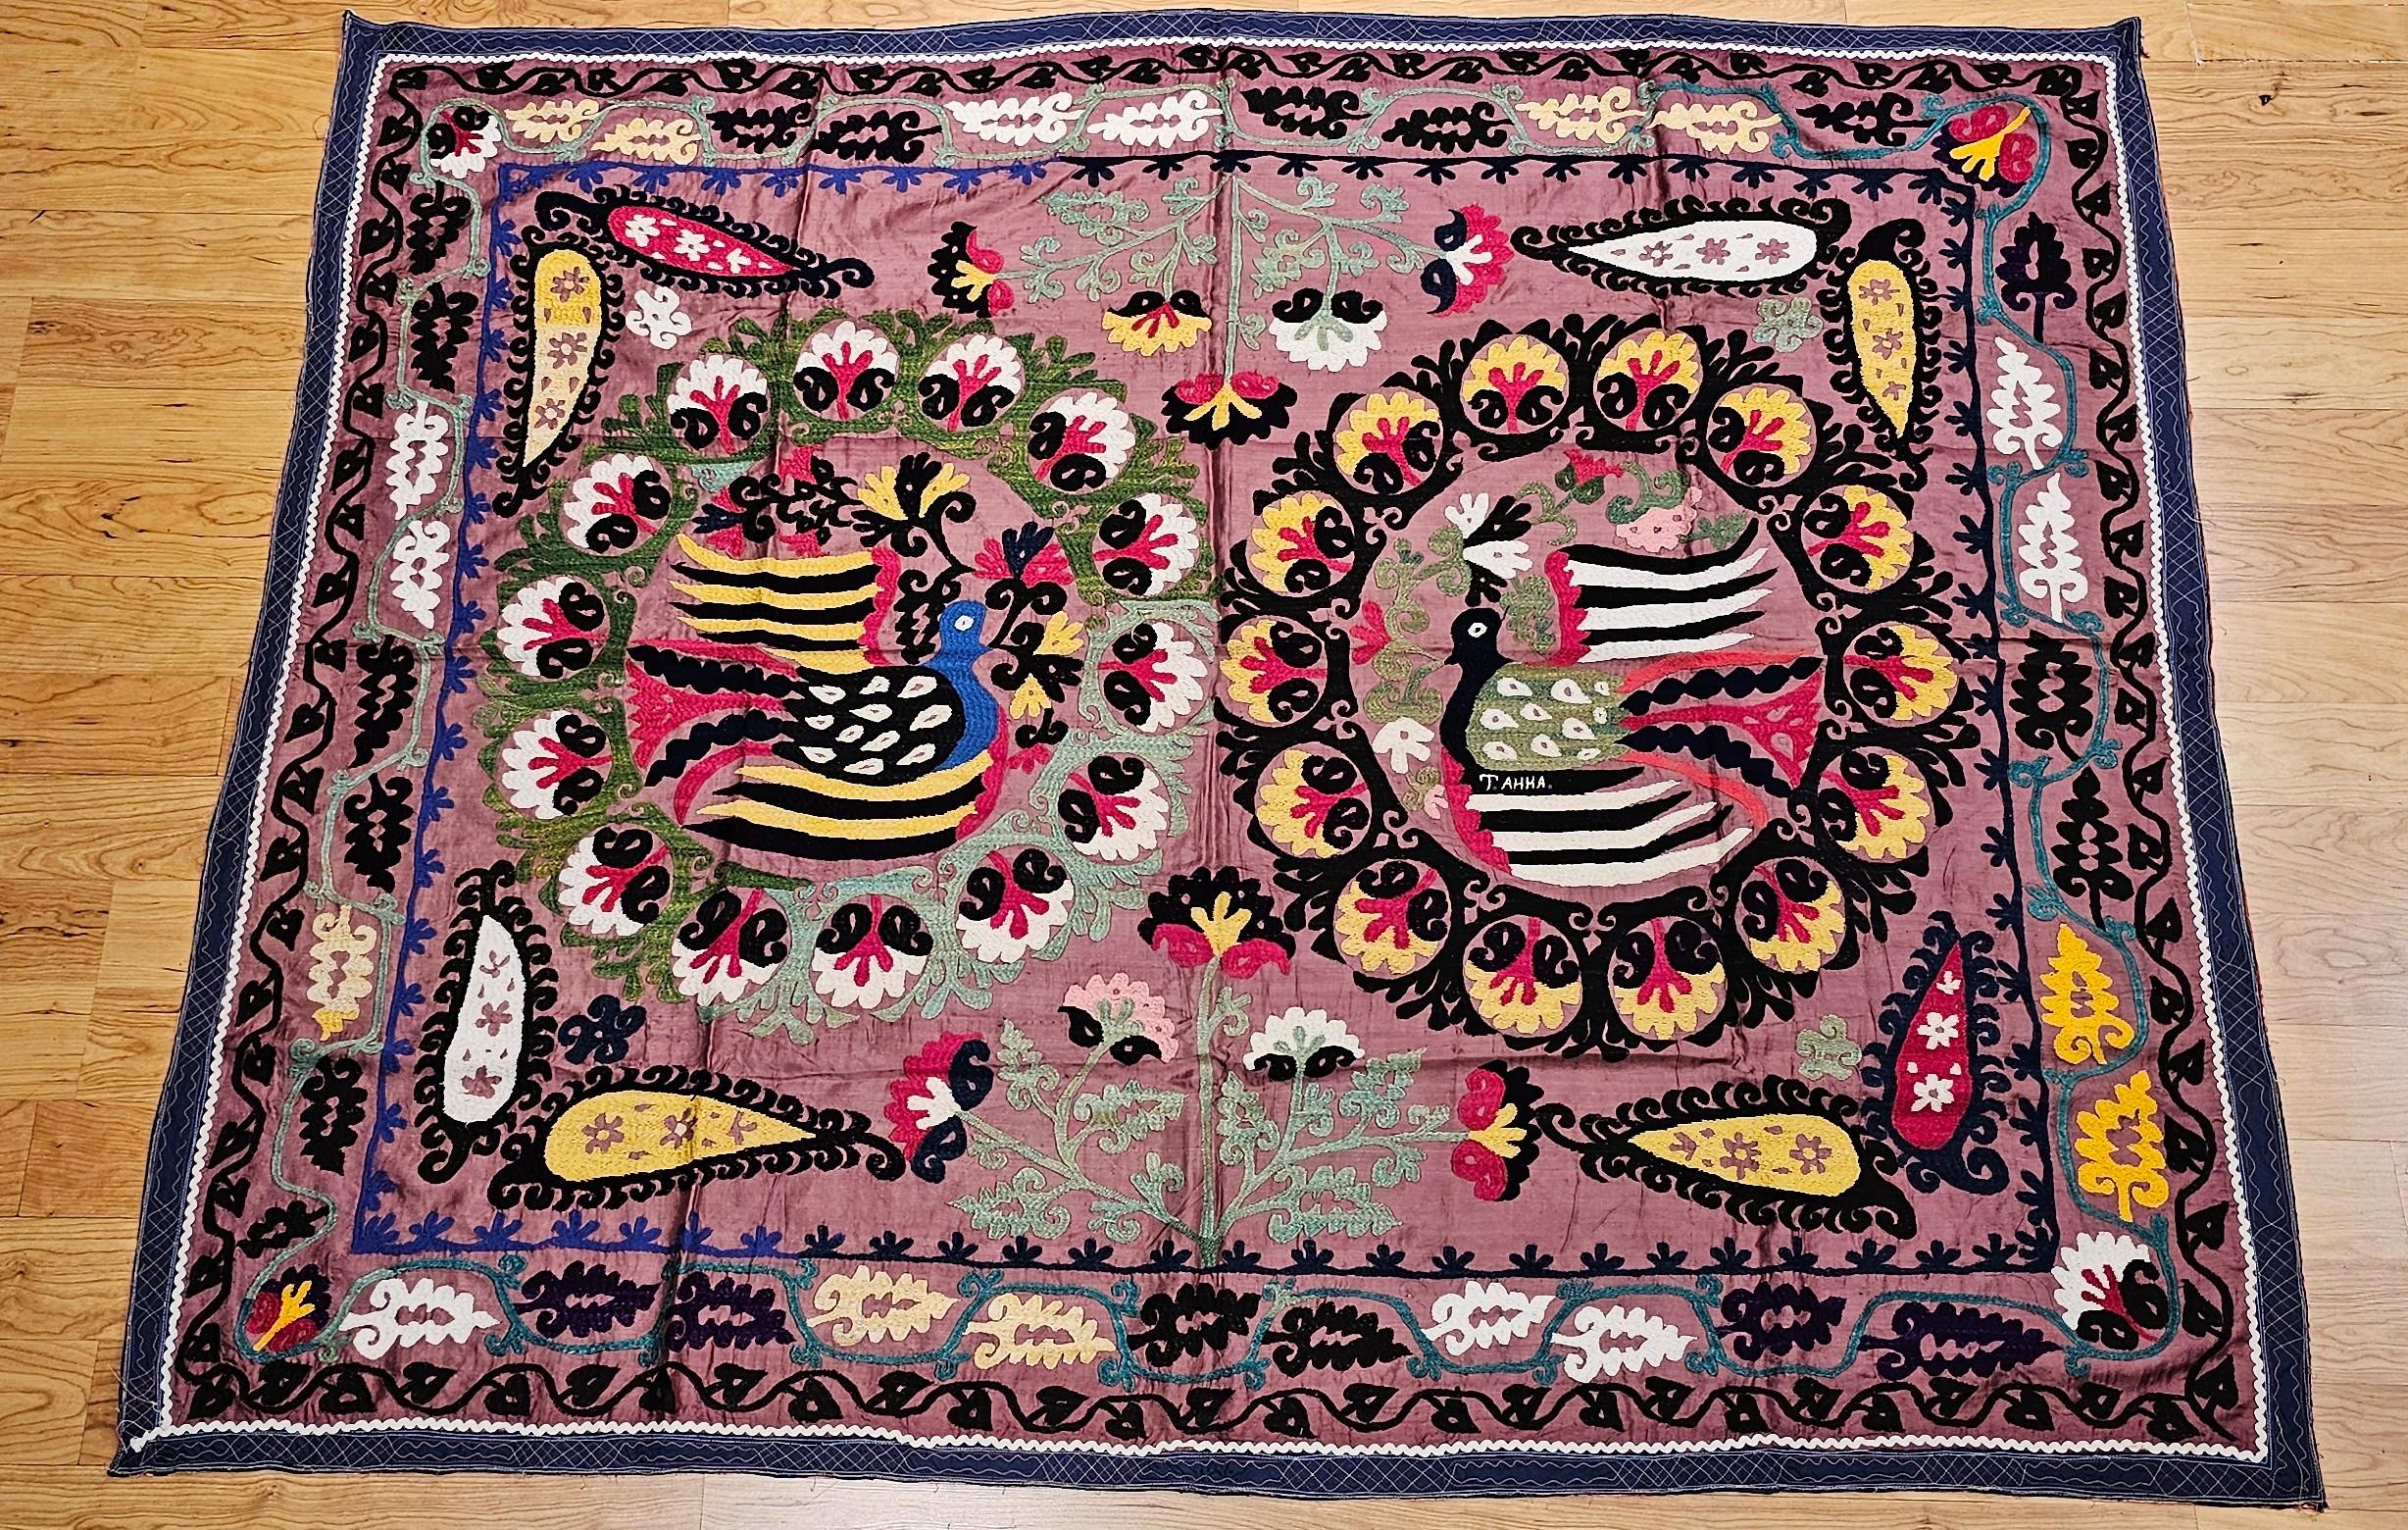 Vintage Seide Suzani Hand bestickt Wandteppich mit einem Paar von Rebhühnern aus Usbekistan in Zentralasien. Das Design dieser Suzani-Stickerei ist sehr einzigartig und unterscheidet sich von den meisten Suzani-Stickereien, die ein Medaillon-Design